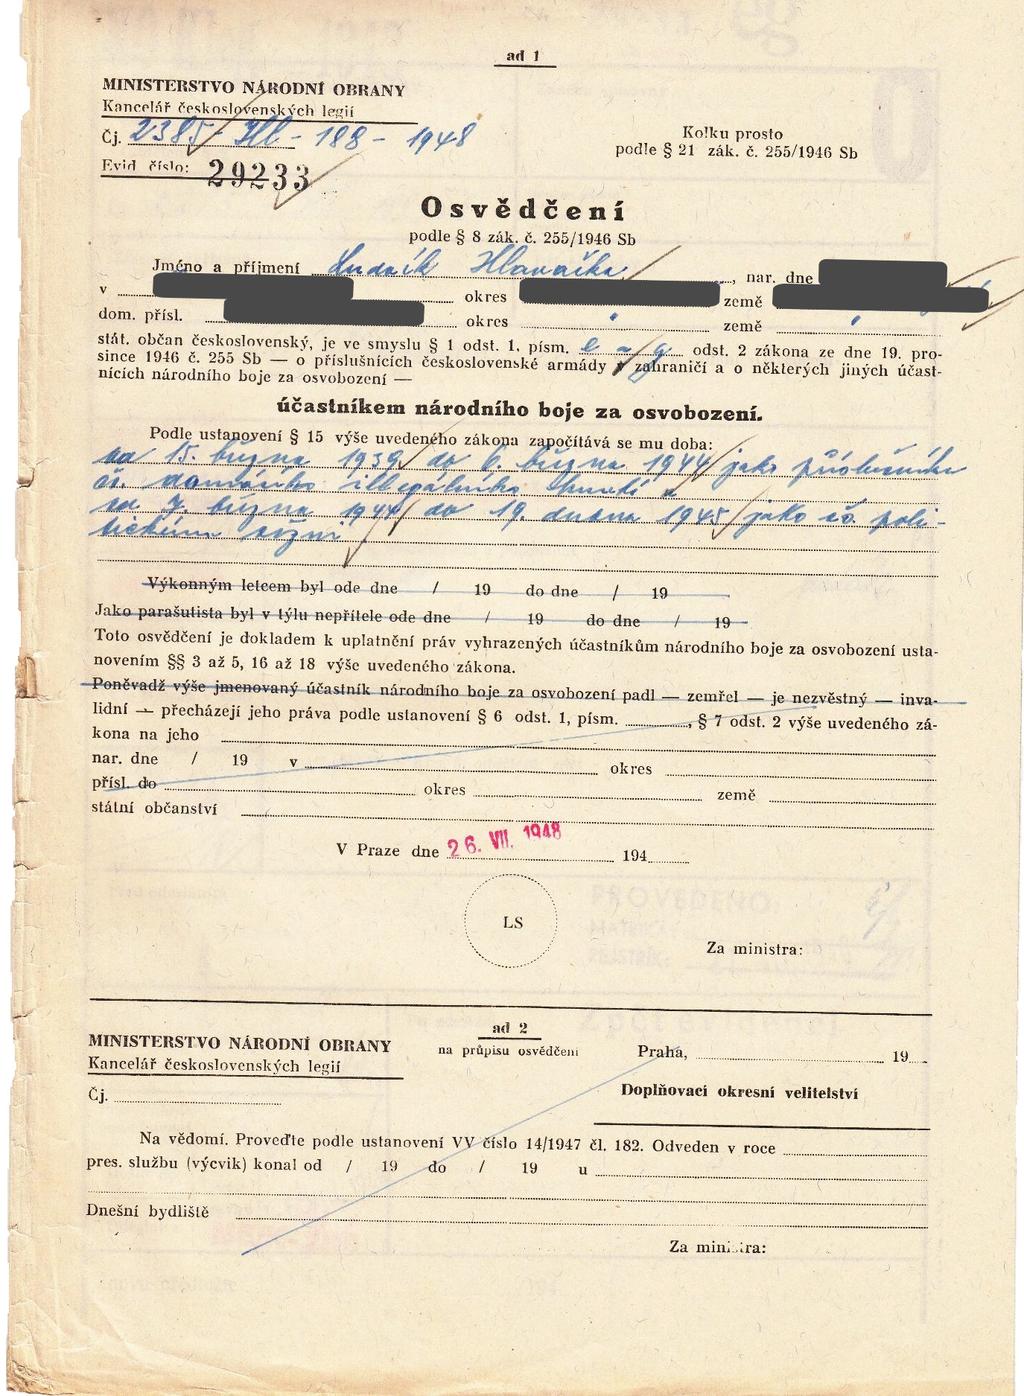 Dokument 5: Osvědčení účastníka národního boje za osvobození vydané MNO 7 1948.